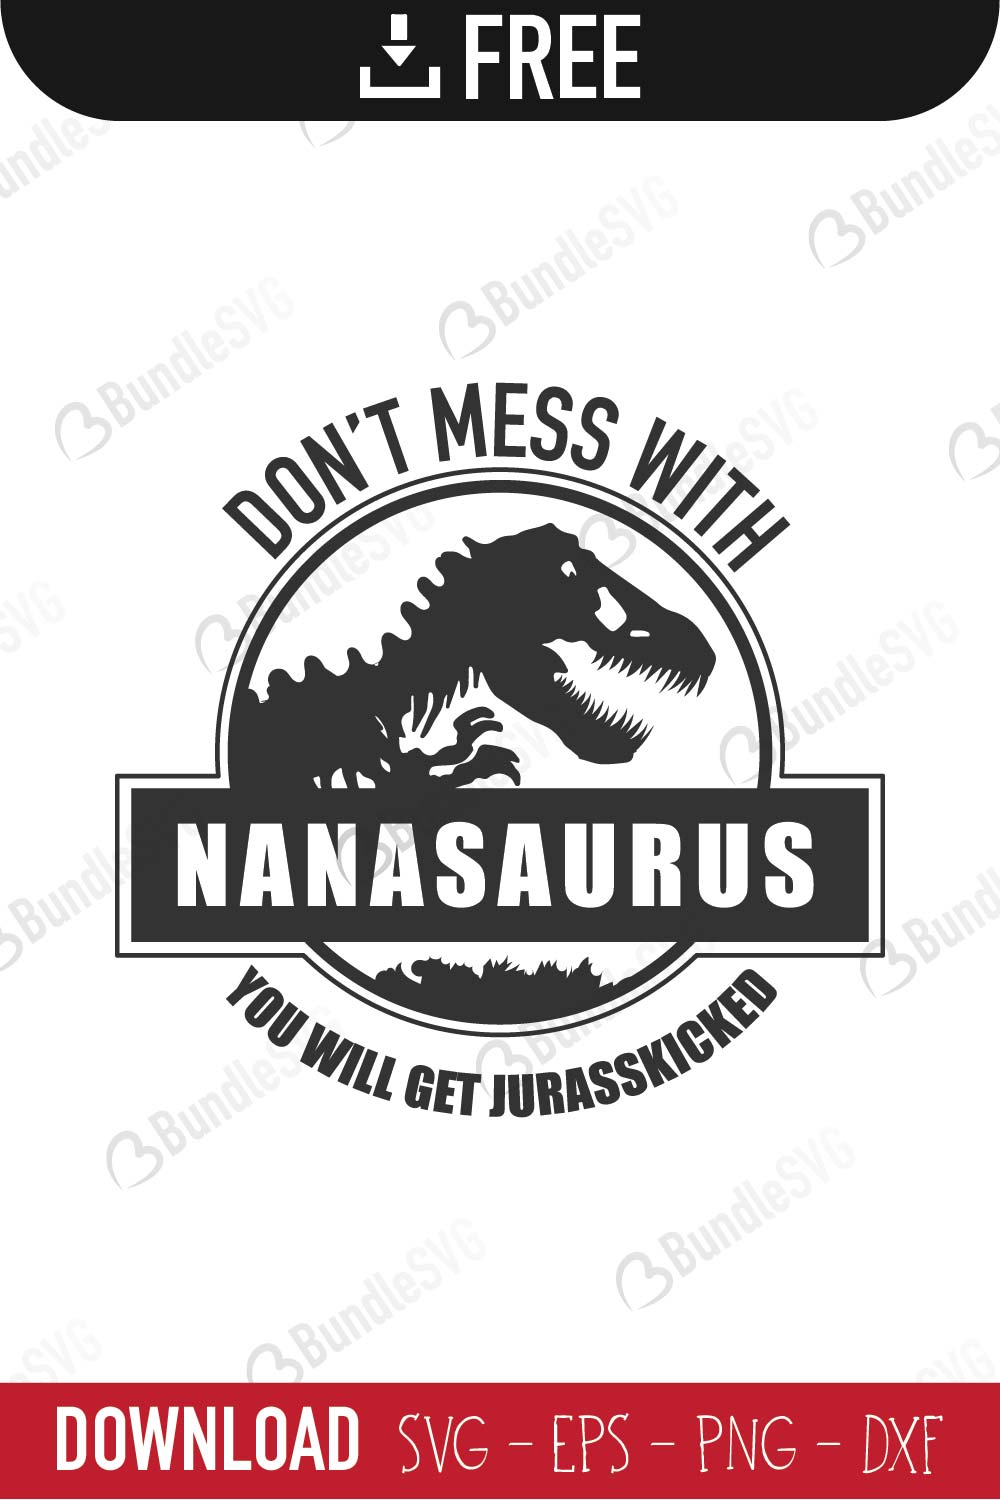 Nanasaurus Svg Cut Files Free Download Bundlesvg